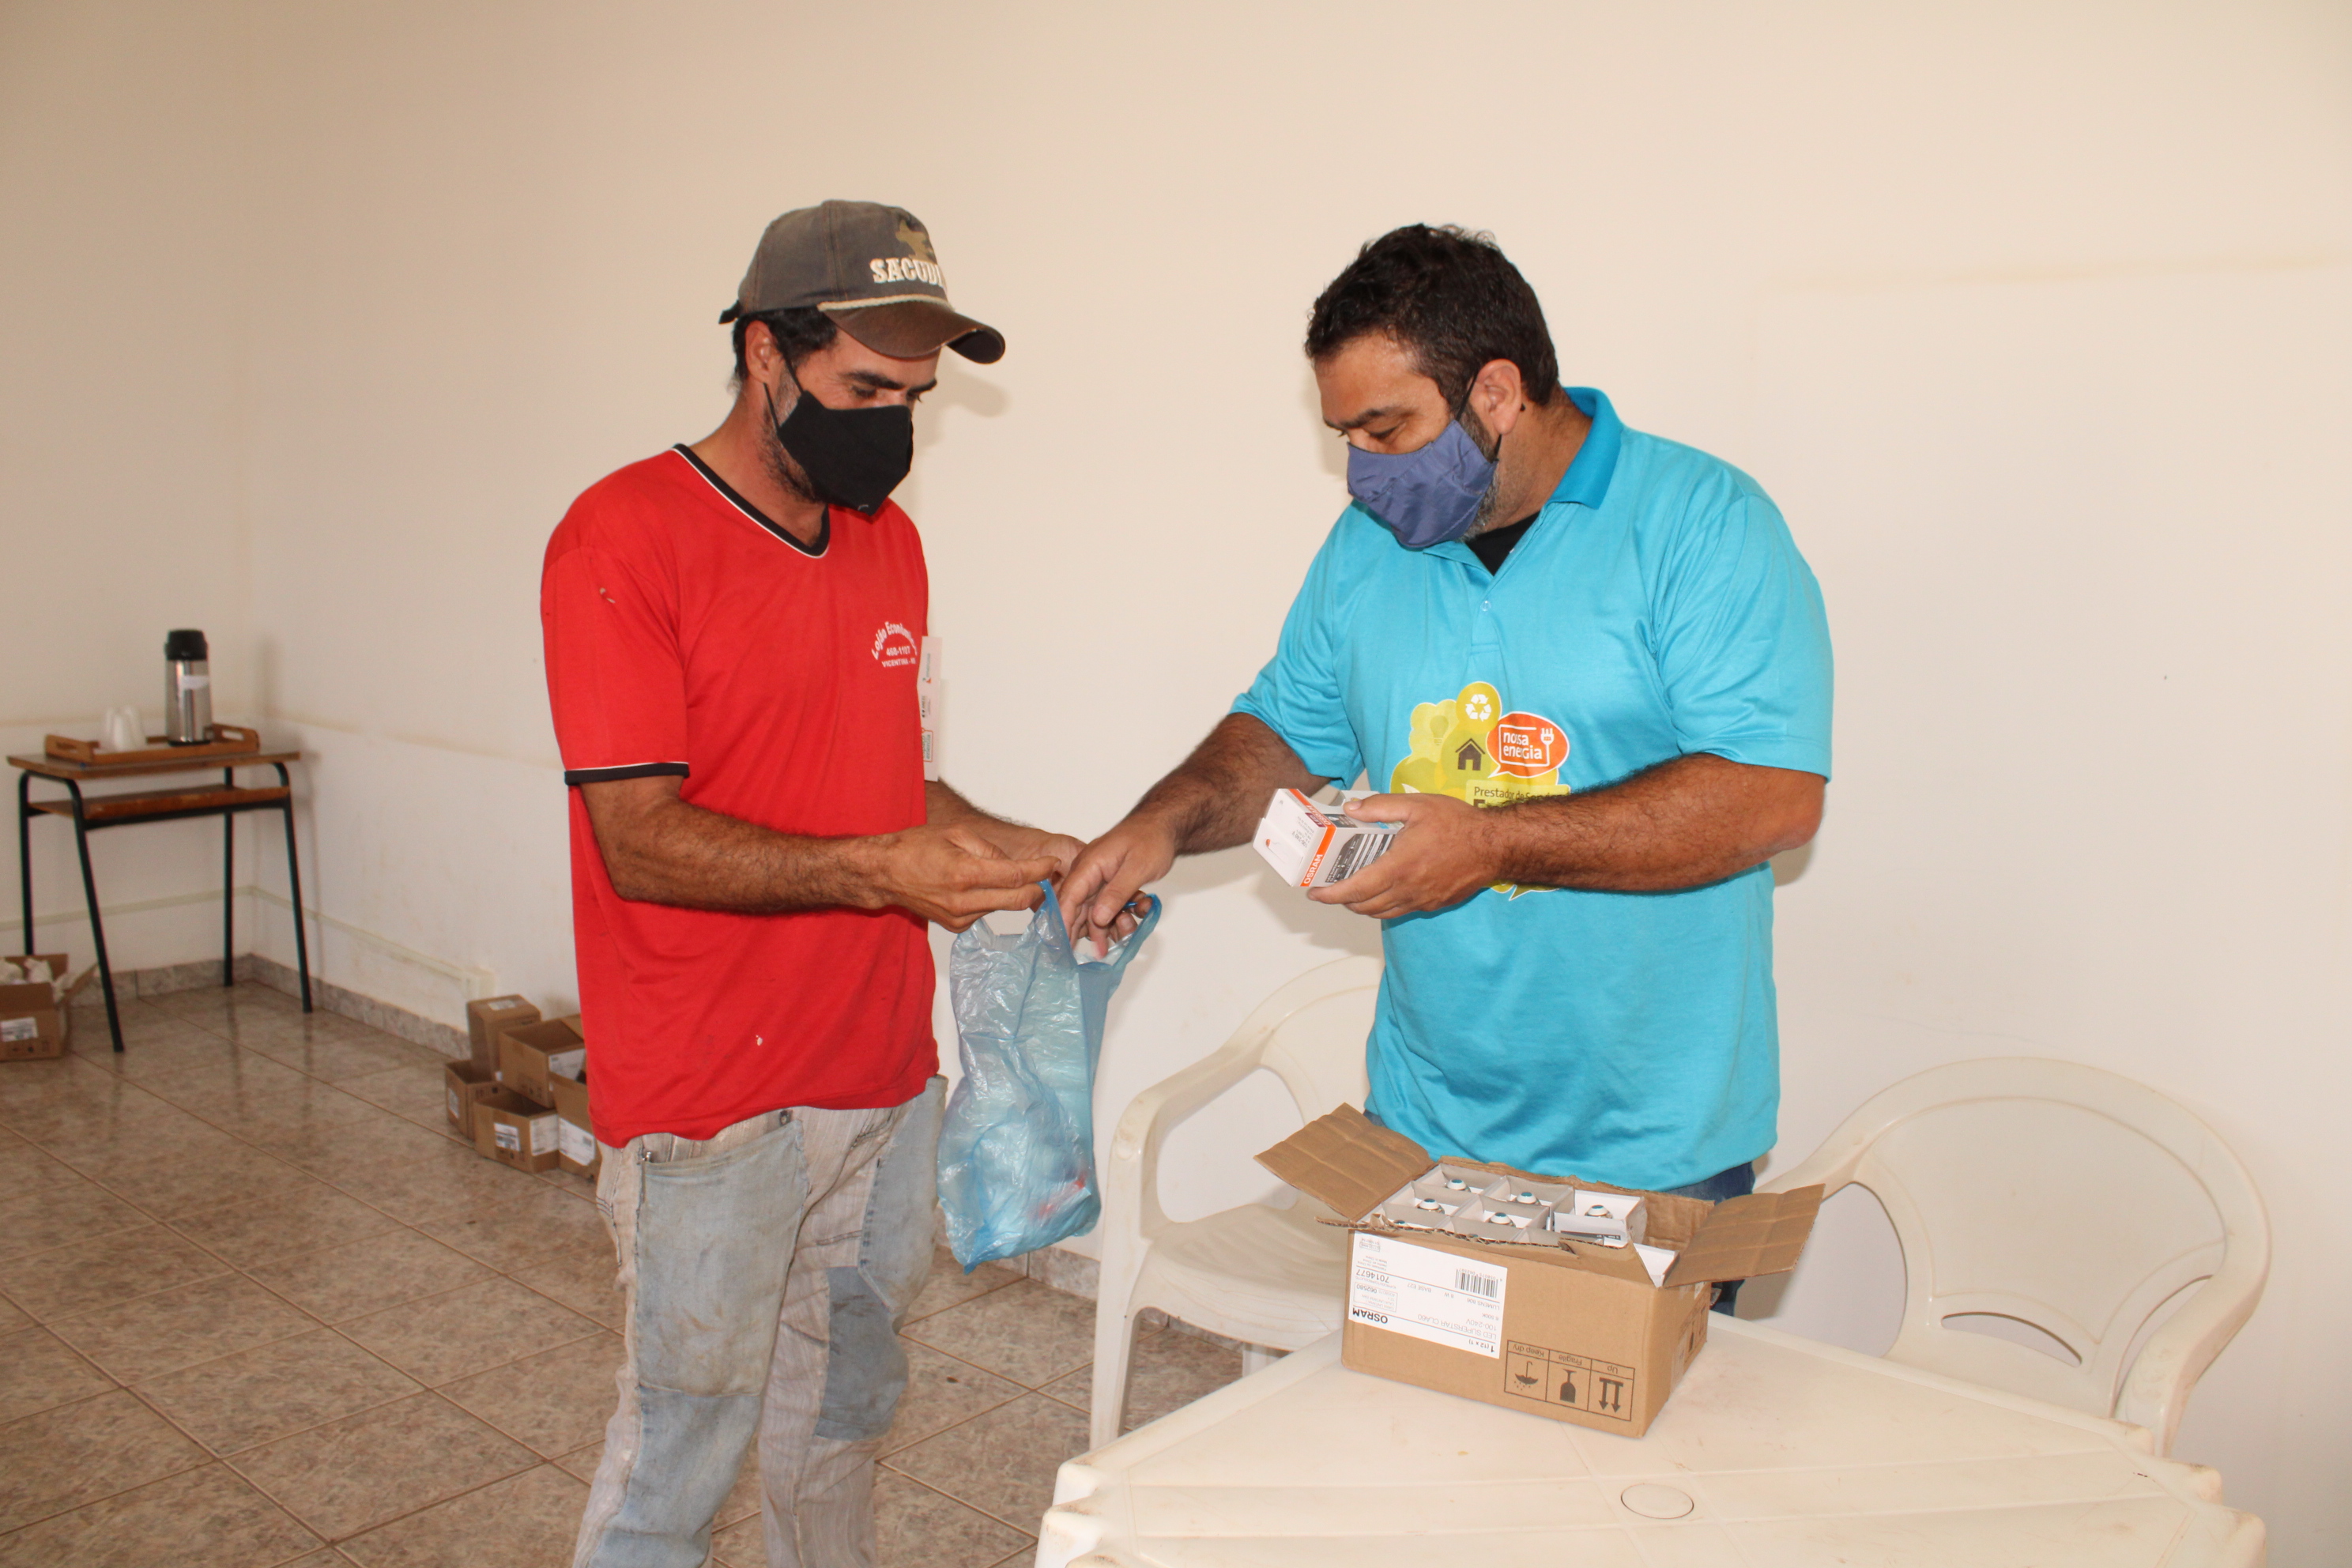 Agente vistoriando depósito a procura de focos do mosquito Aedes aegypti. (Foto: Diogo Gonçalves).